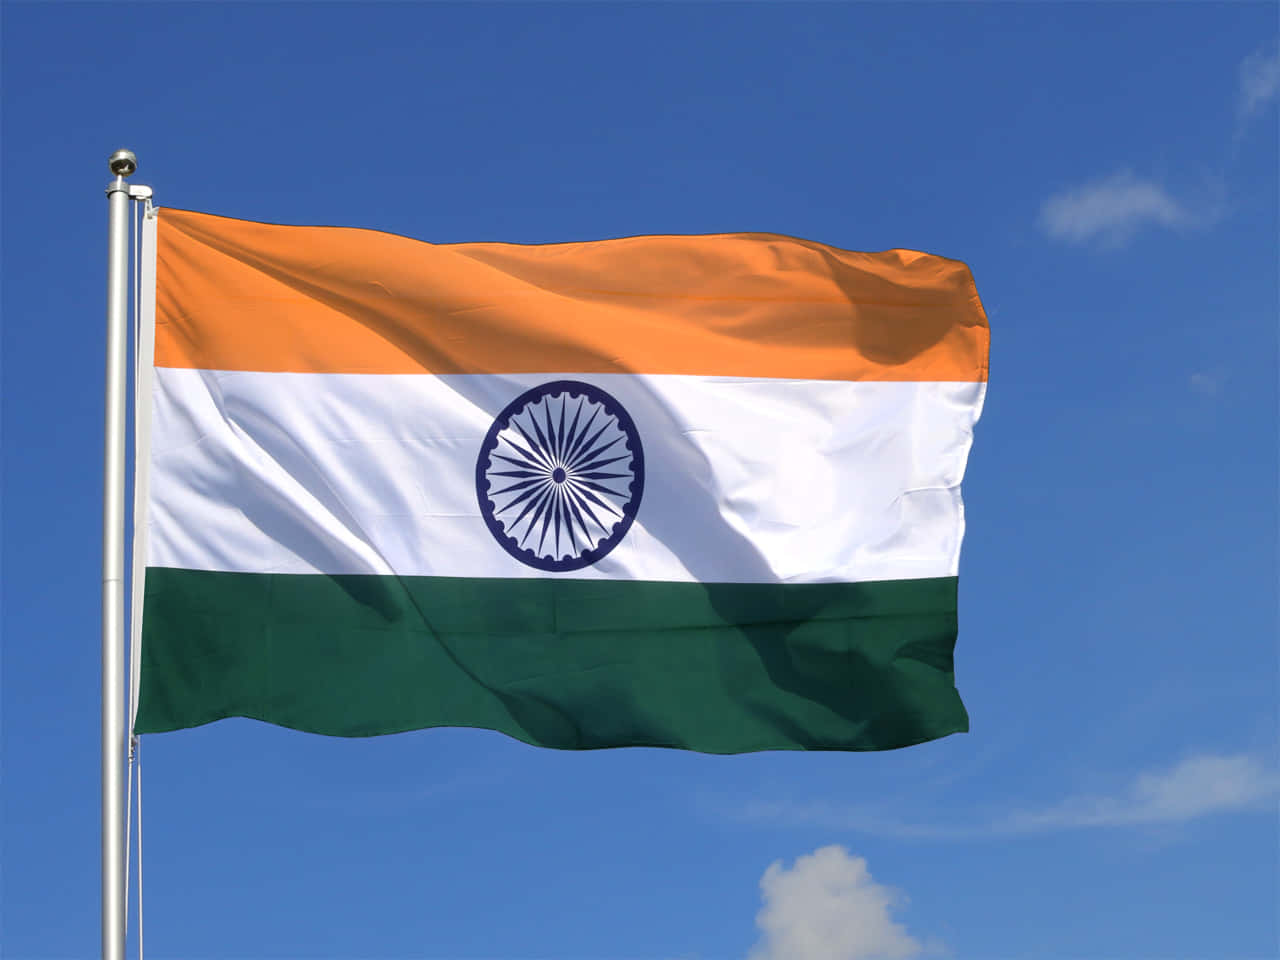 Dienationalflagge Indiens - Symbolisiert Einheit In Vielfalt.